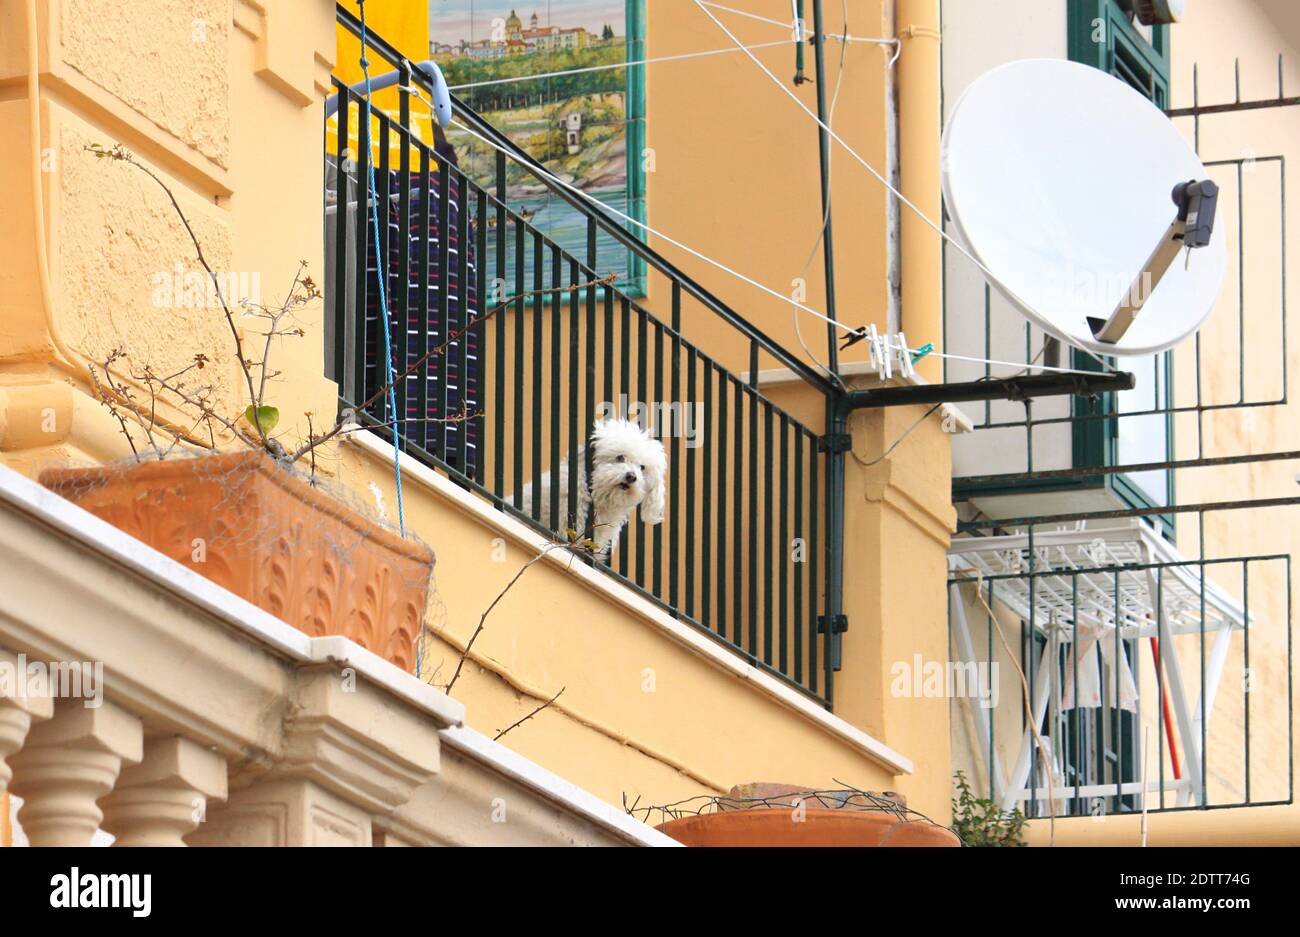 Le joli petit chien blanc regarde entre les barres d'un balcon et attend probablement son propriétaire. Une scène colorée du sud de l'Italie. Banque D'Images